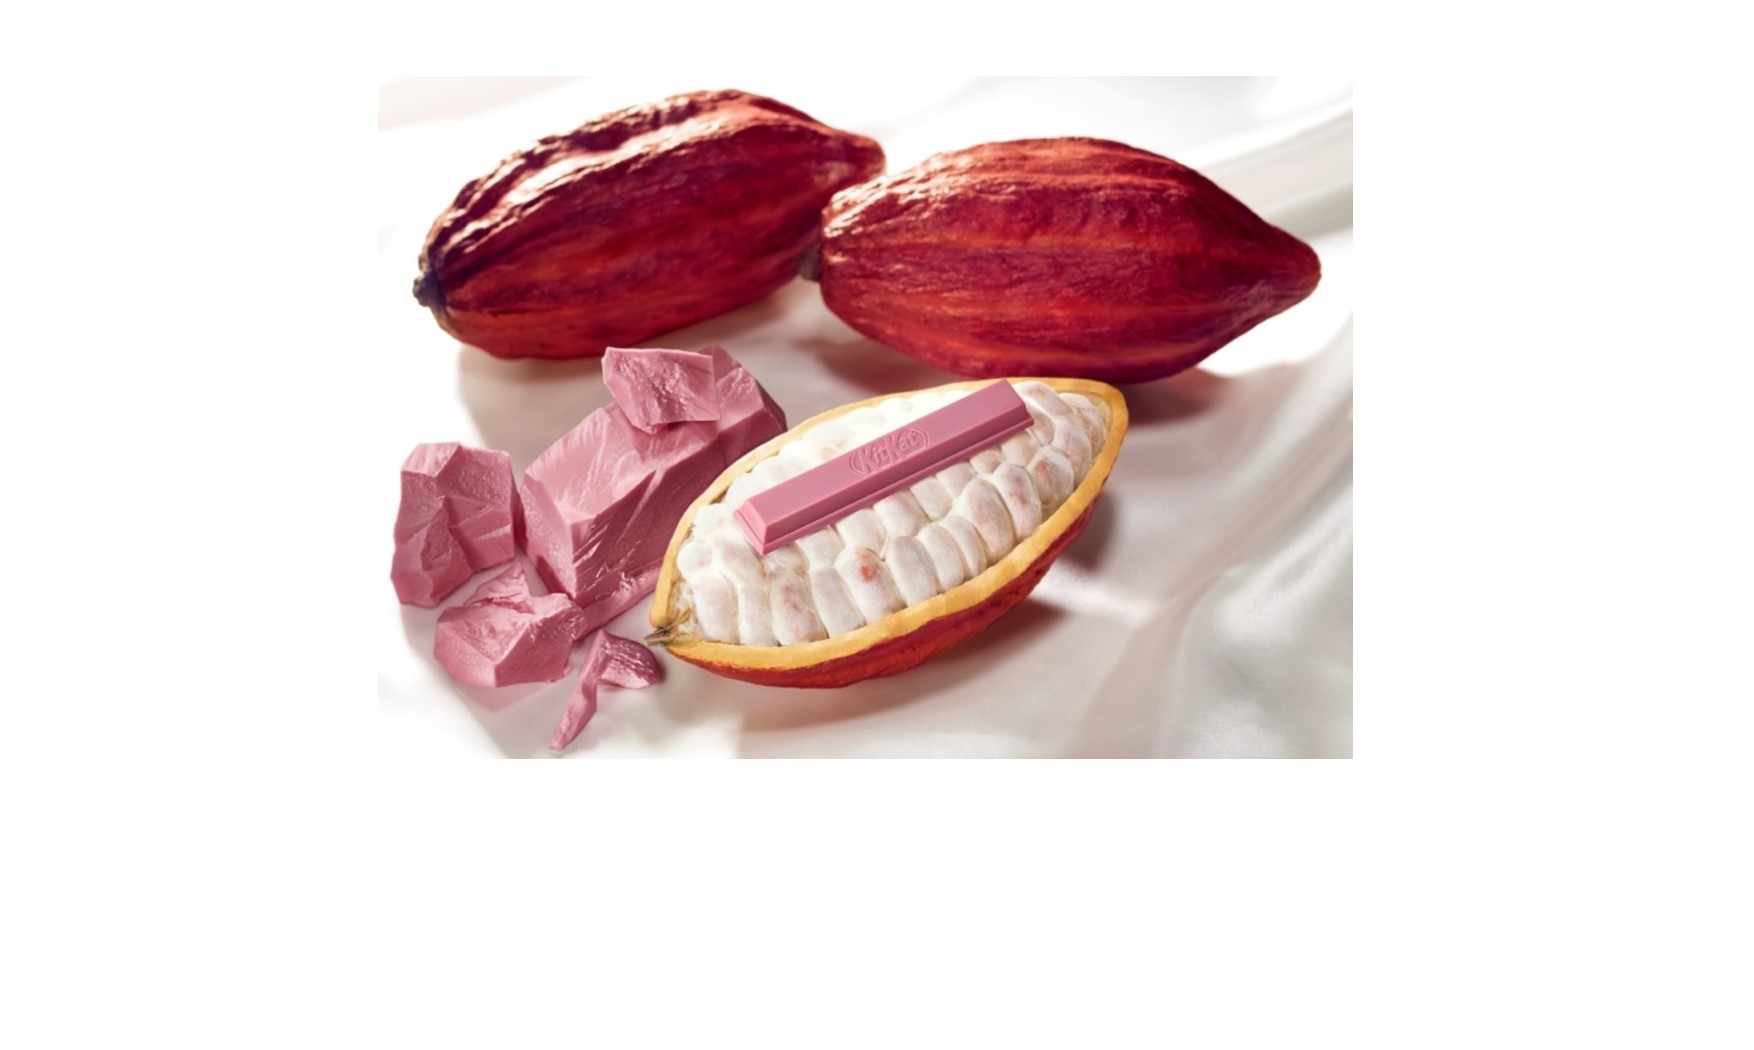 A Nestlé a világon elsőként dob piacra rubin csokoládéval készült édességet